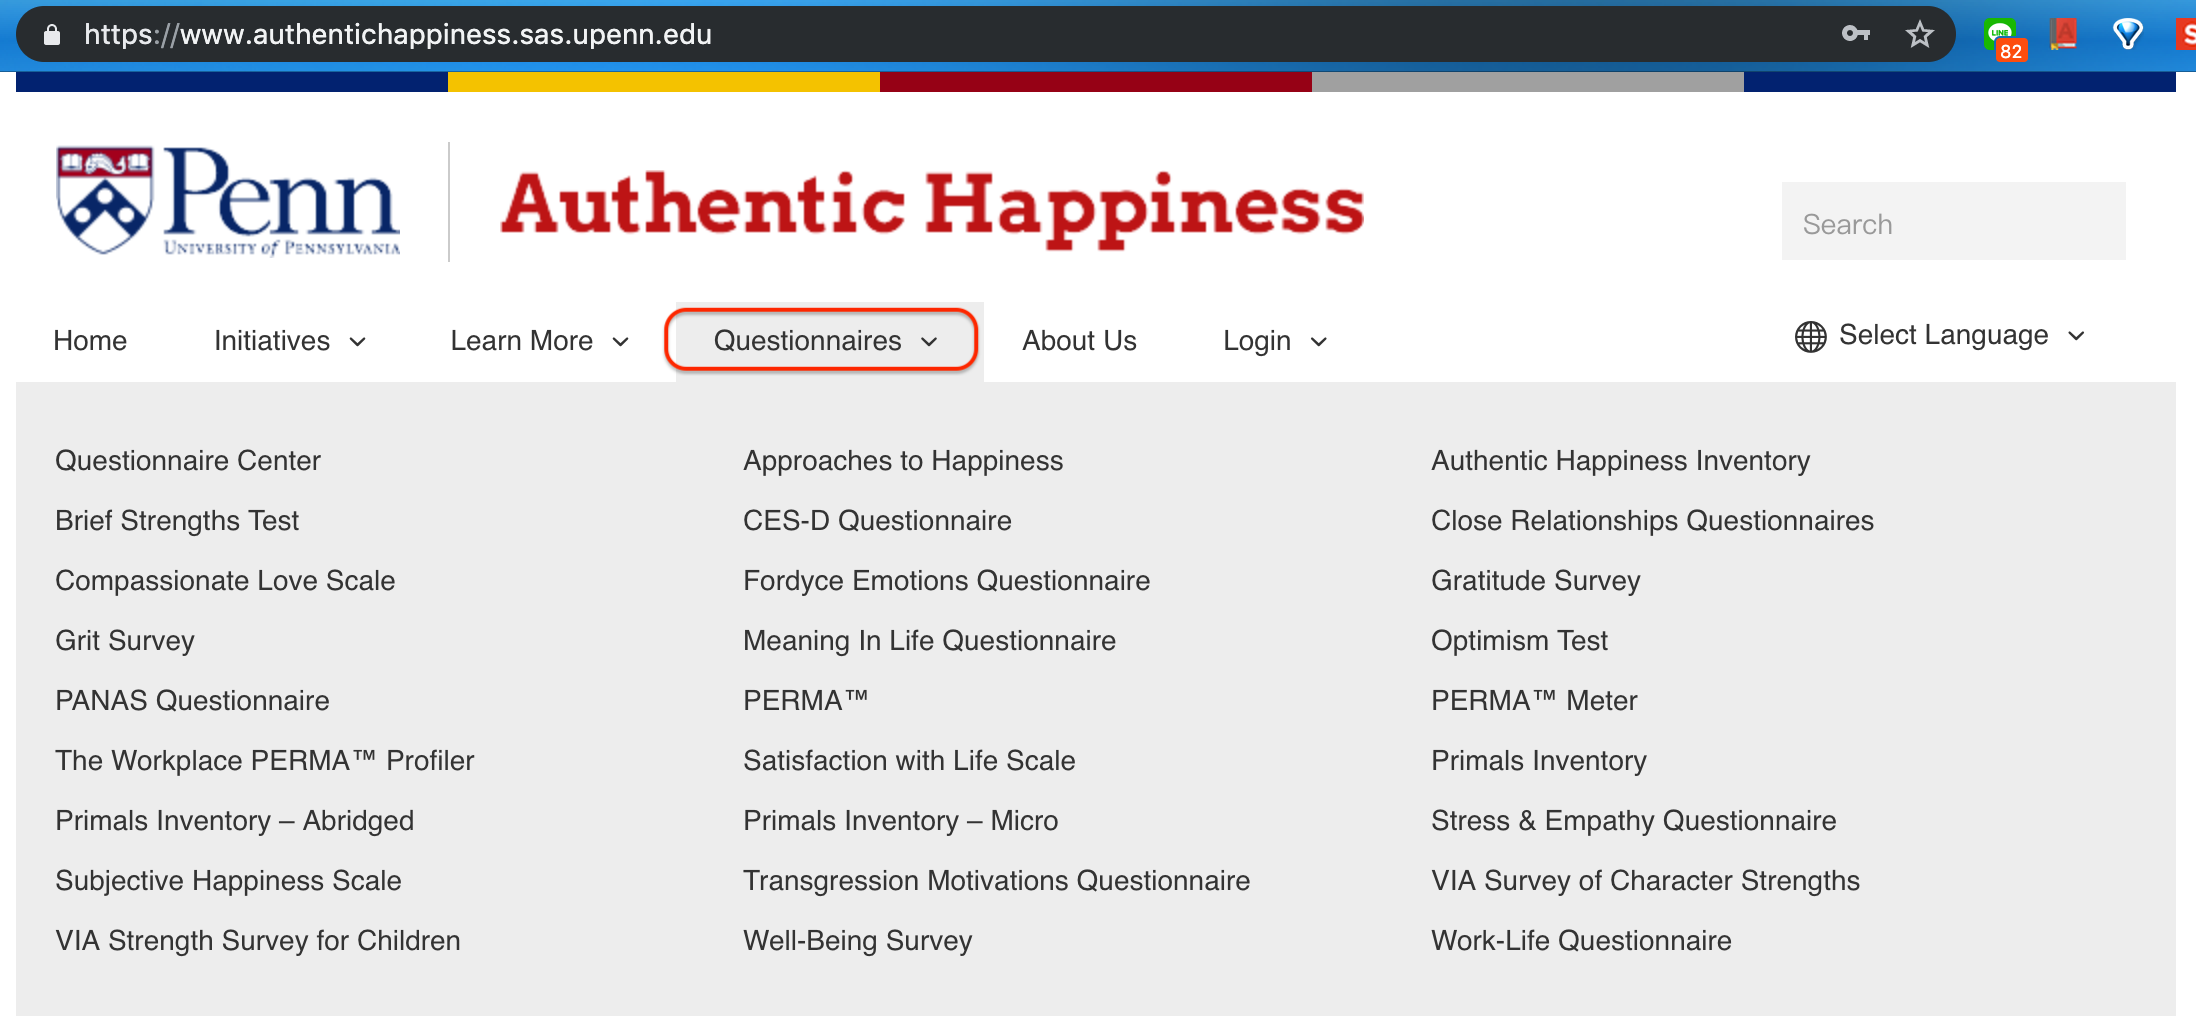 正向心理學 (Positive Psychology) 免費資源推薦 — 哈佛幸福學與耶魯快樂學